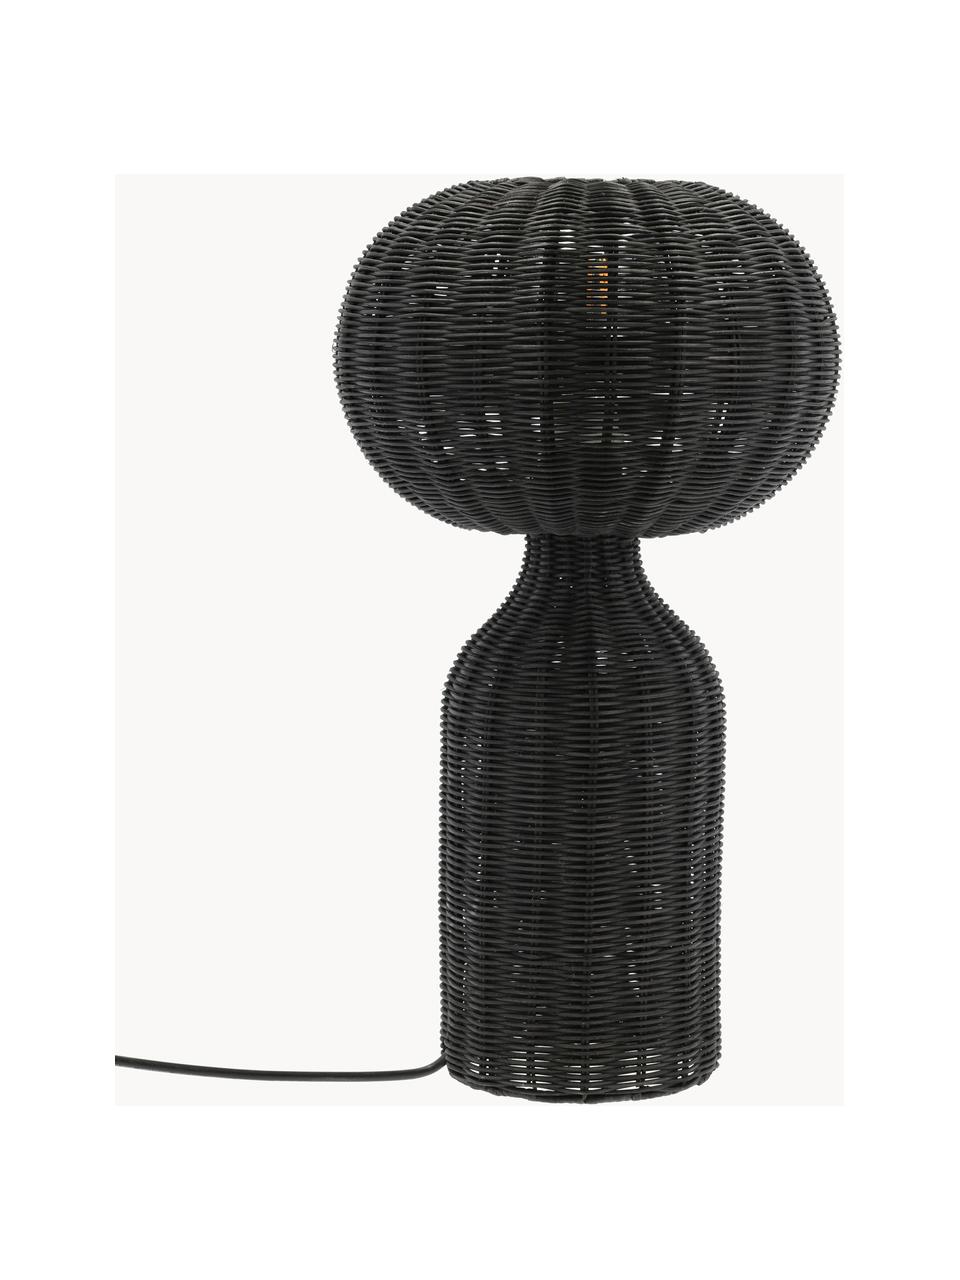 Grote tafellamp Vinka van rotan, Lamp: rotan, Zwart, Ø 30 x H 54 cm